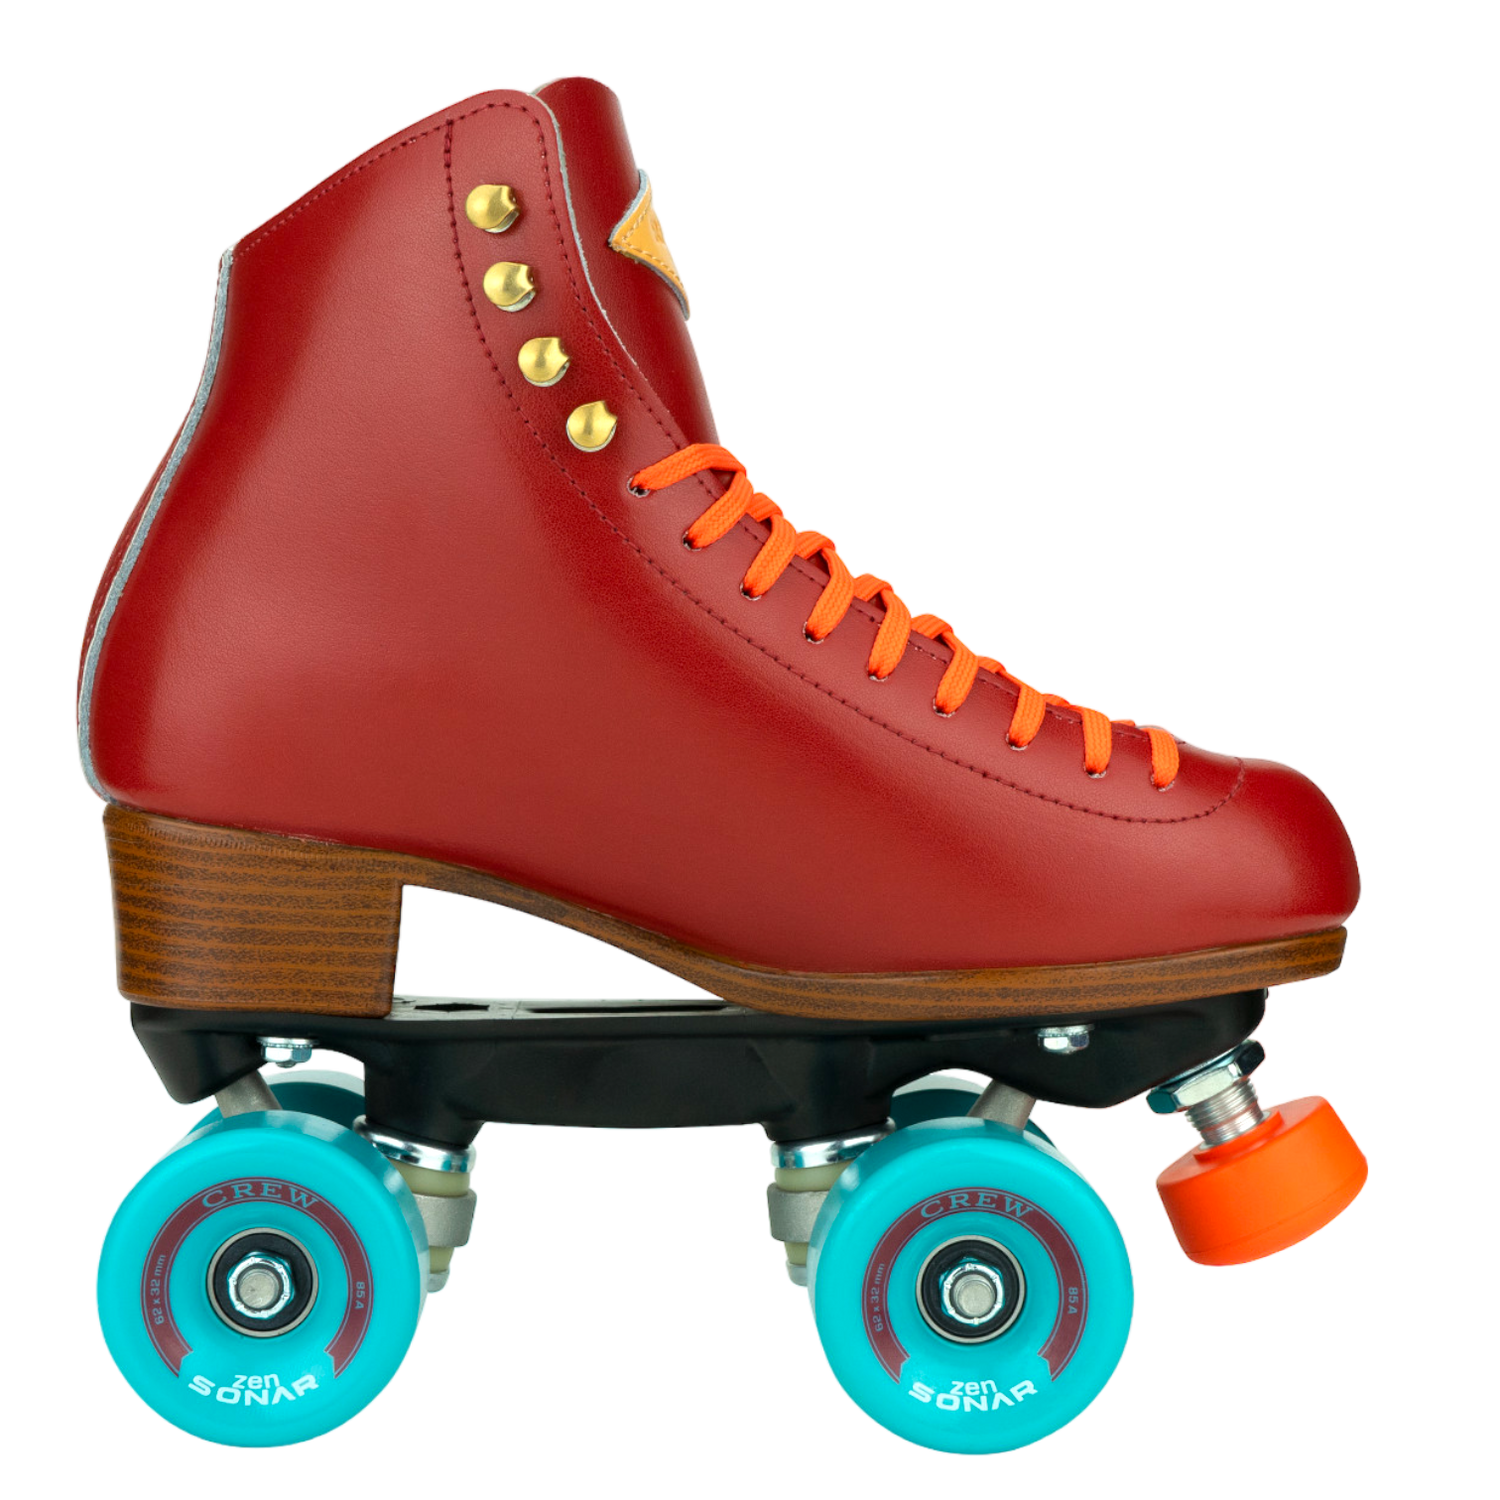 Roller Skate Accessories Set – Rad Gal Roller Skate